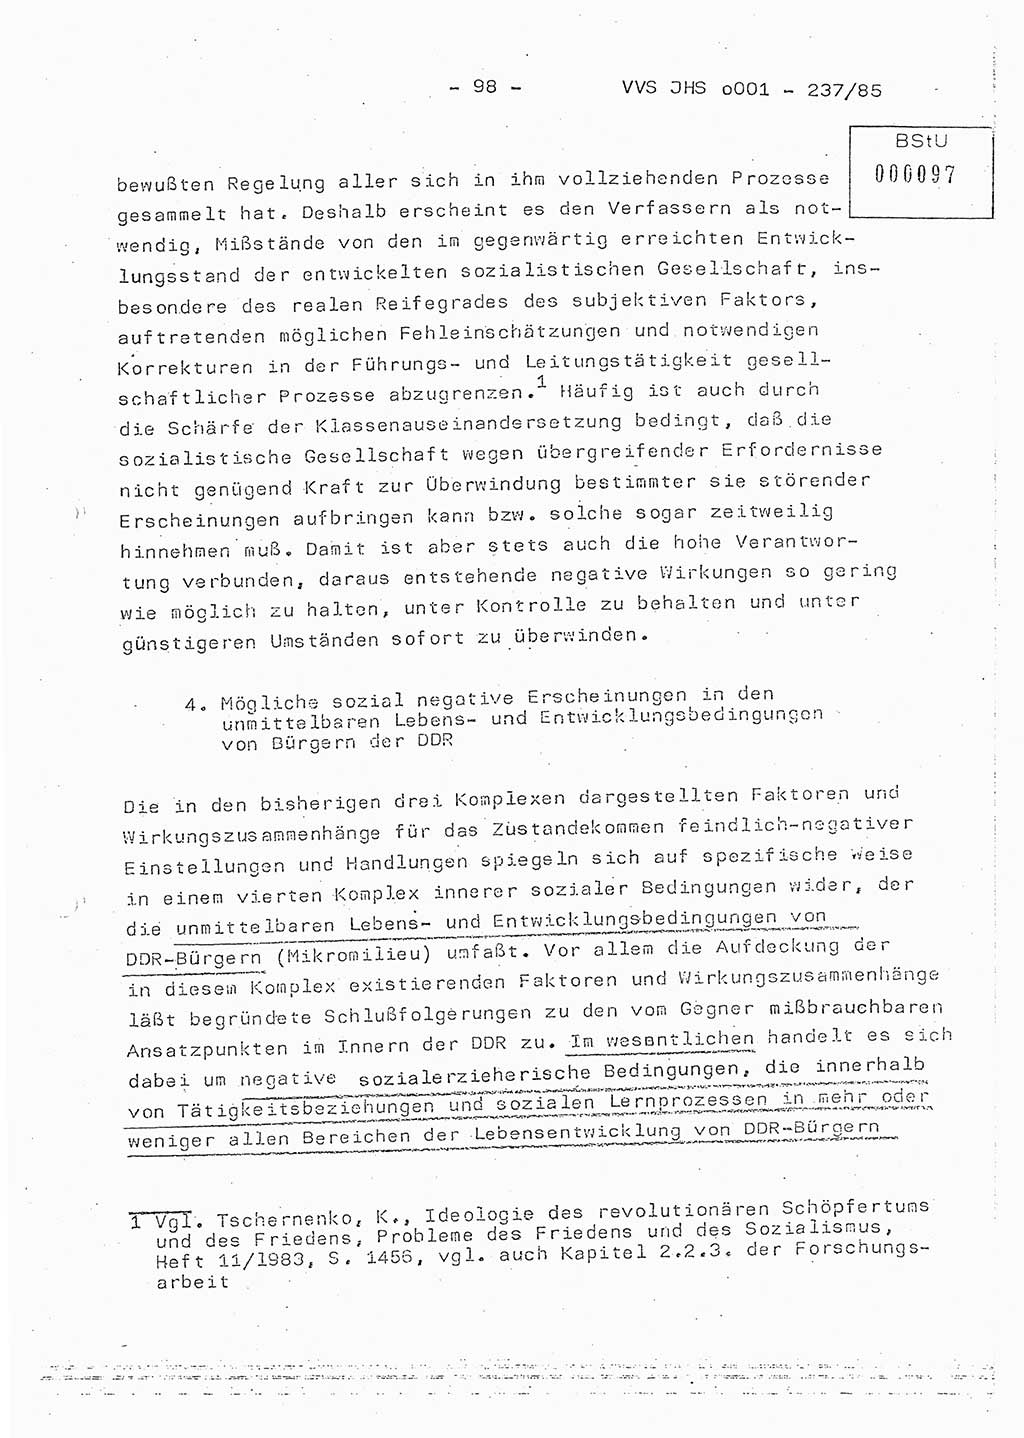 Dissertation Oberstleutnant Peter Jakulski (JHS), Oberstleutnat Christian Rudolph (HA Ⅸ), Major Horst Böttger (ZMD), Major Wolfgang Grüneberg (JHS), Major Albert Meutsch (JHS), Ministerium für Staatssicherheit (MfS) [Deutsche Demokratische Republik (DDR)], Juristische Hochschule (JHS), Vertrauliche Verschlußsache (VVS) o001-237/85, Potsdam 1985, Seite 98 (Diss. MfS DDR JHS VVS o001-237/85 1985, S. 98)